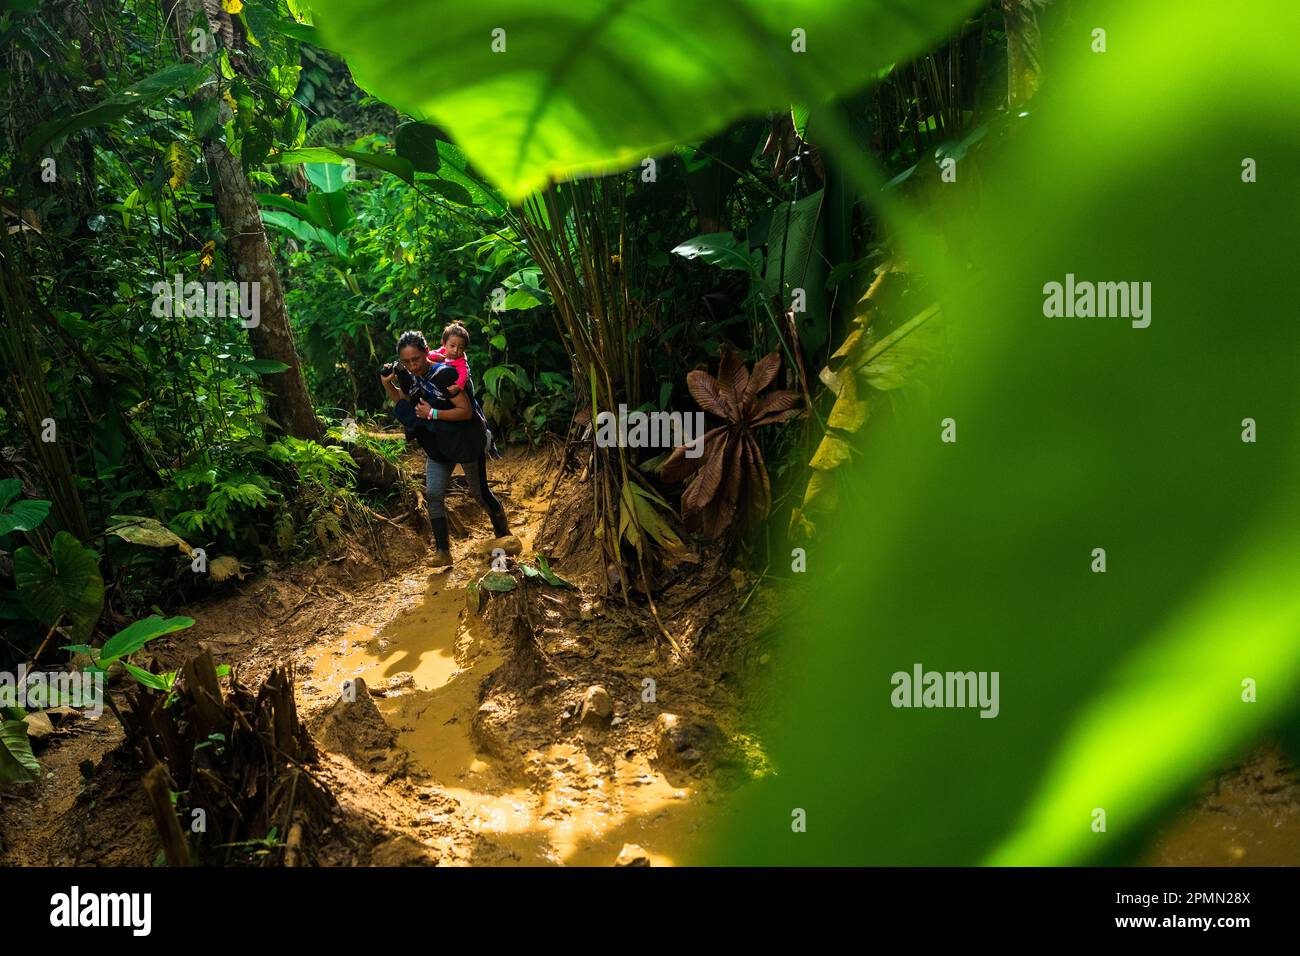 Un immigrato ecuadoriano, che porta il suo bambino, cammina attraverso un sentiero fangoso nella giungla selvaggia e pericolosa del Darién Gap tra Colombia e Panamá. Foto Stock